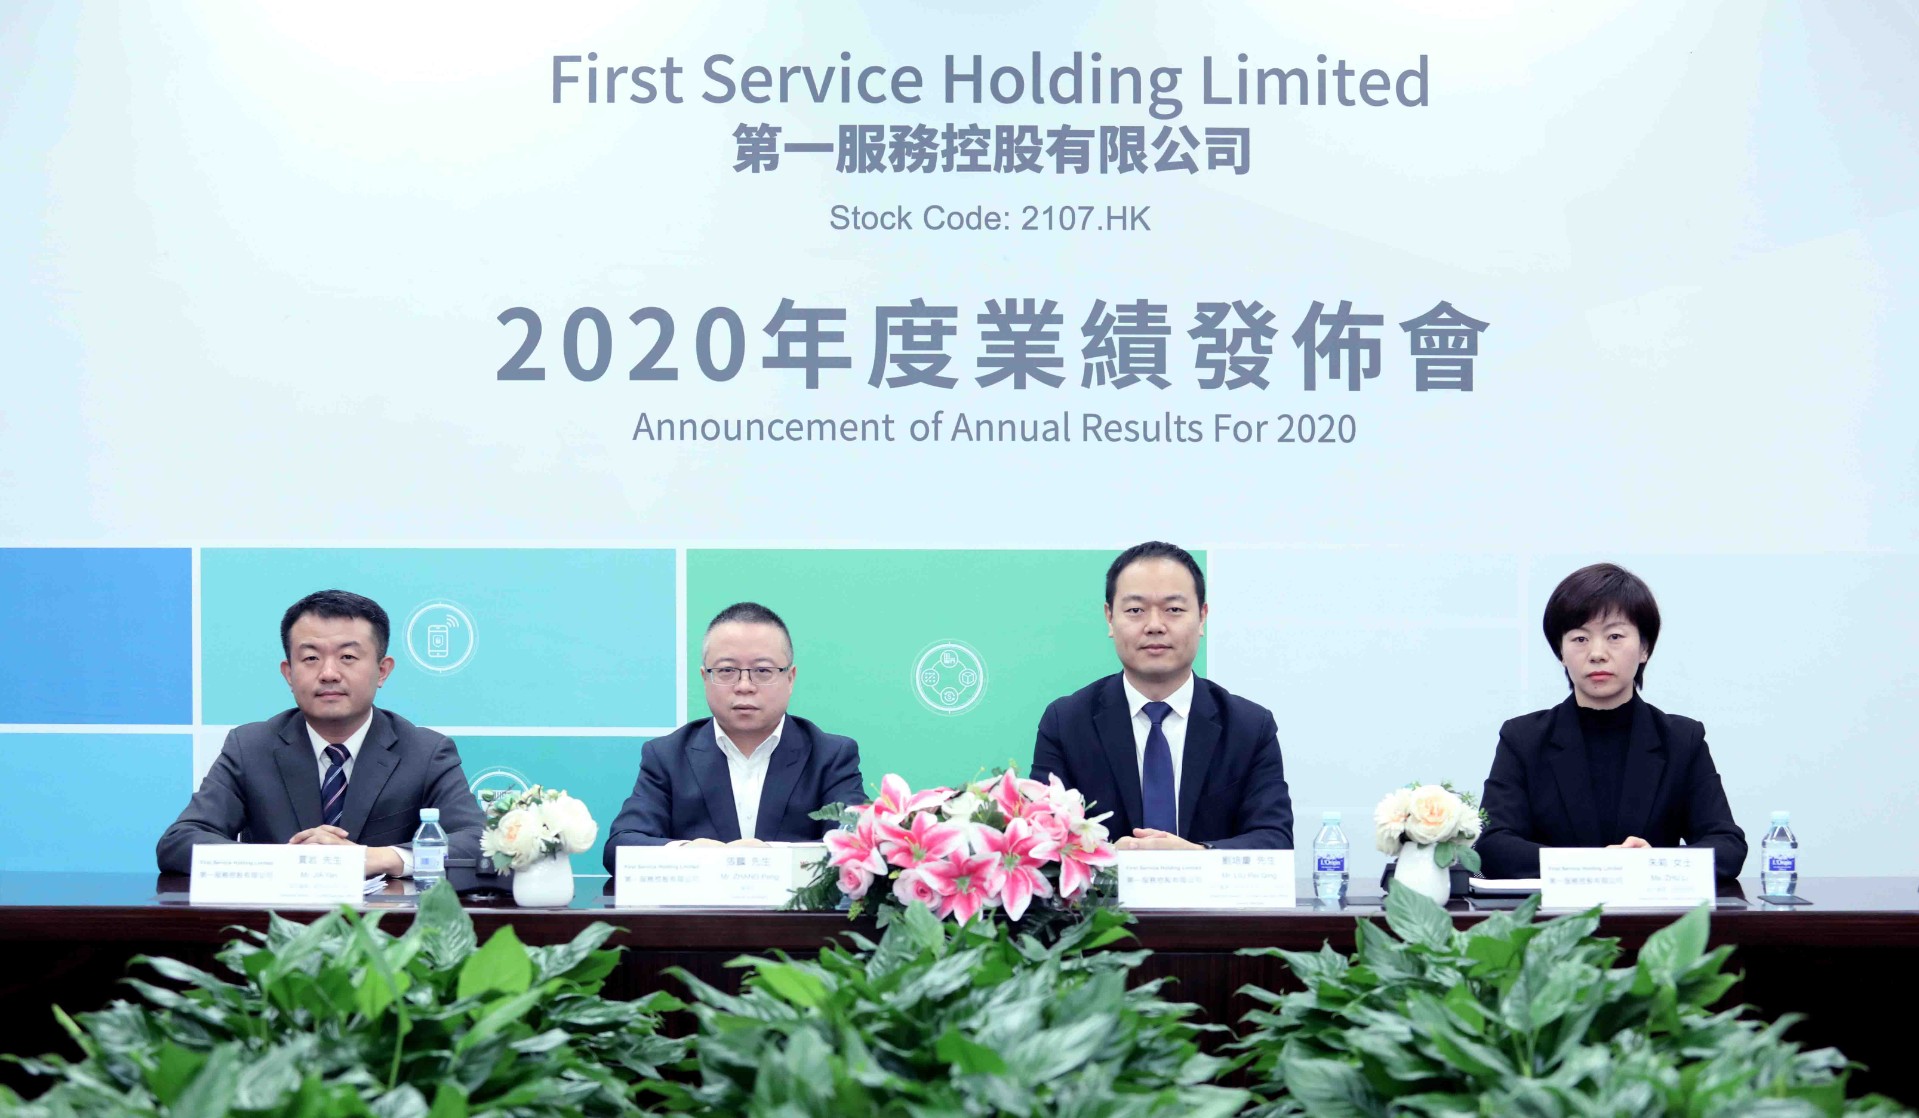 第一服务控股(2107.HK)2020年度业绩发布会正式召开